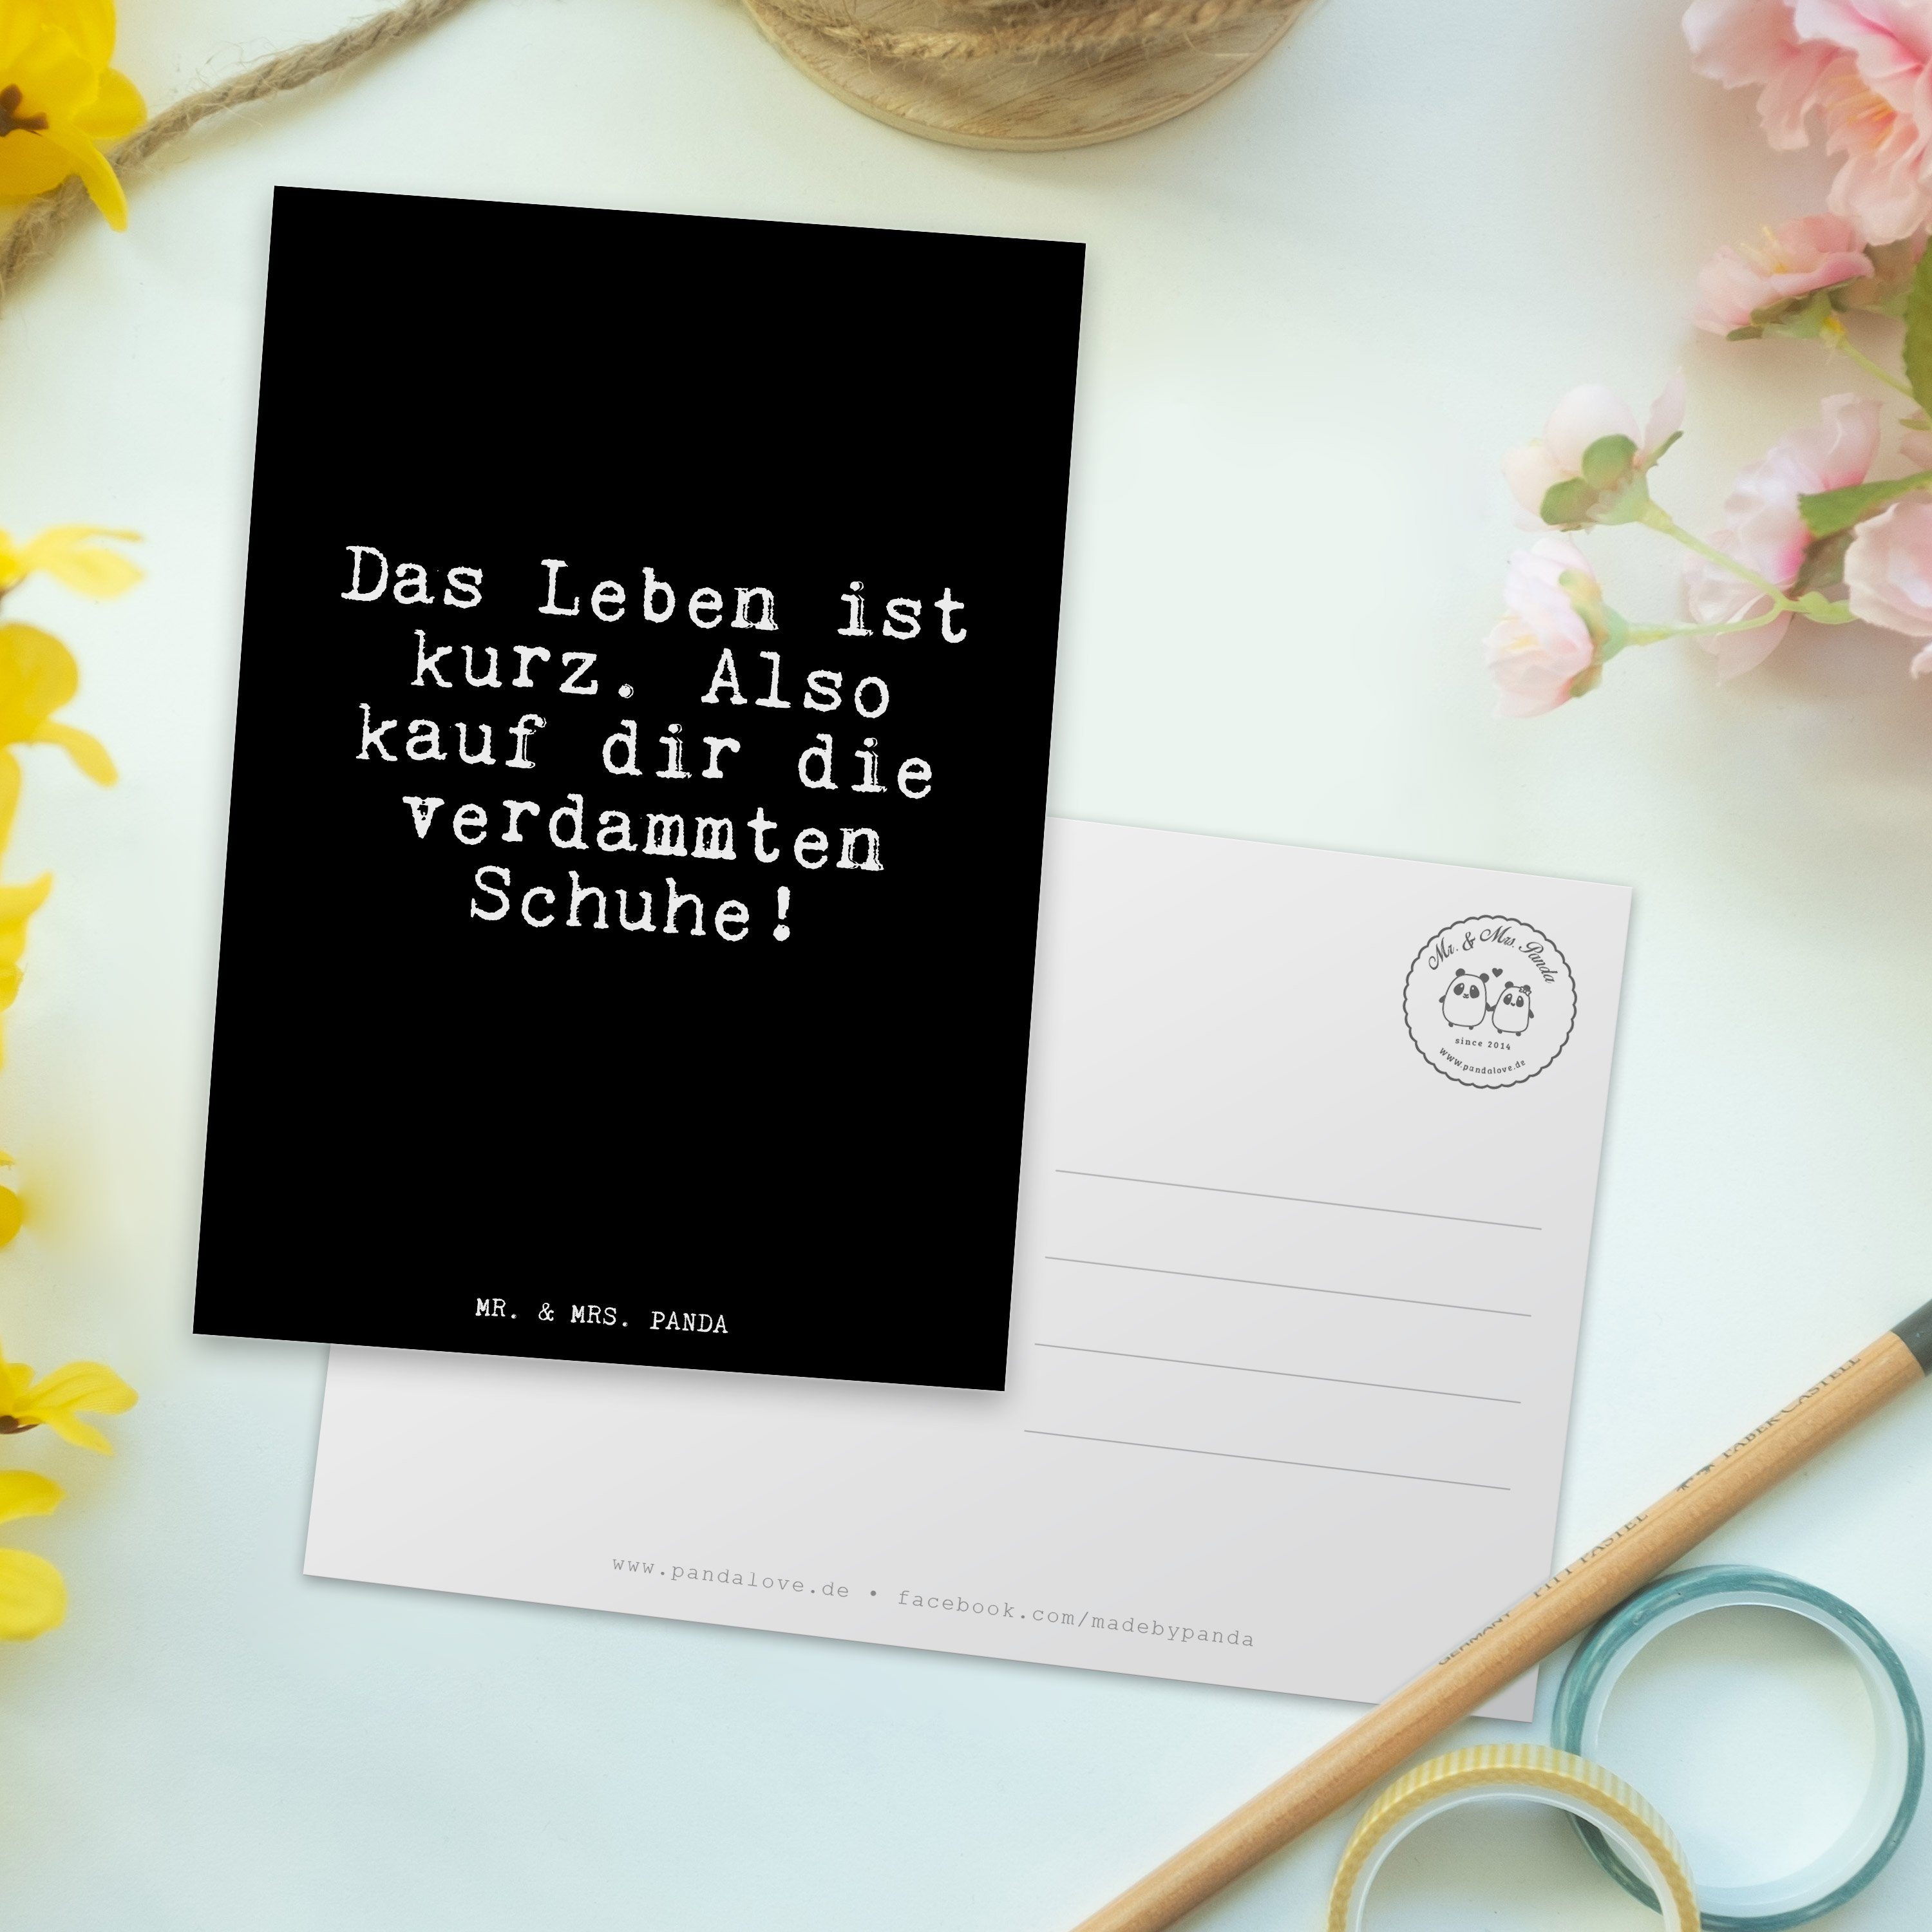 Mr. & Mrs. lustig, Schuhe, Leben Sprüche - Das Postkarte - Geschenk, Schwarz Panda kurz.... ist